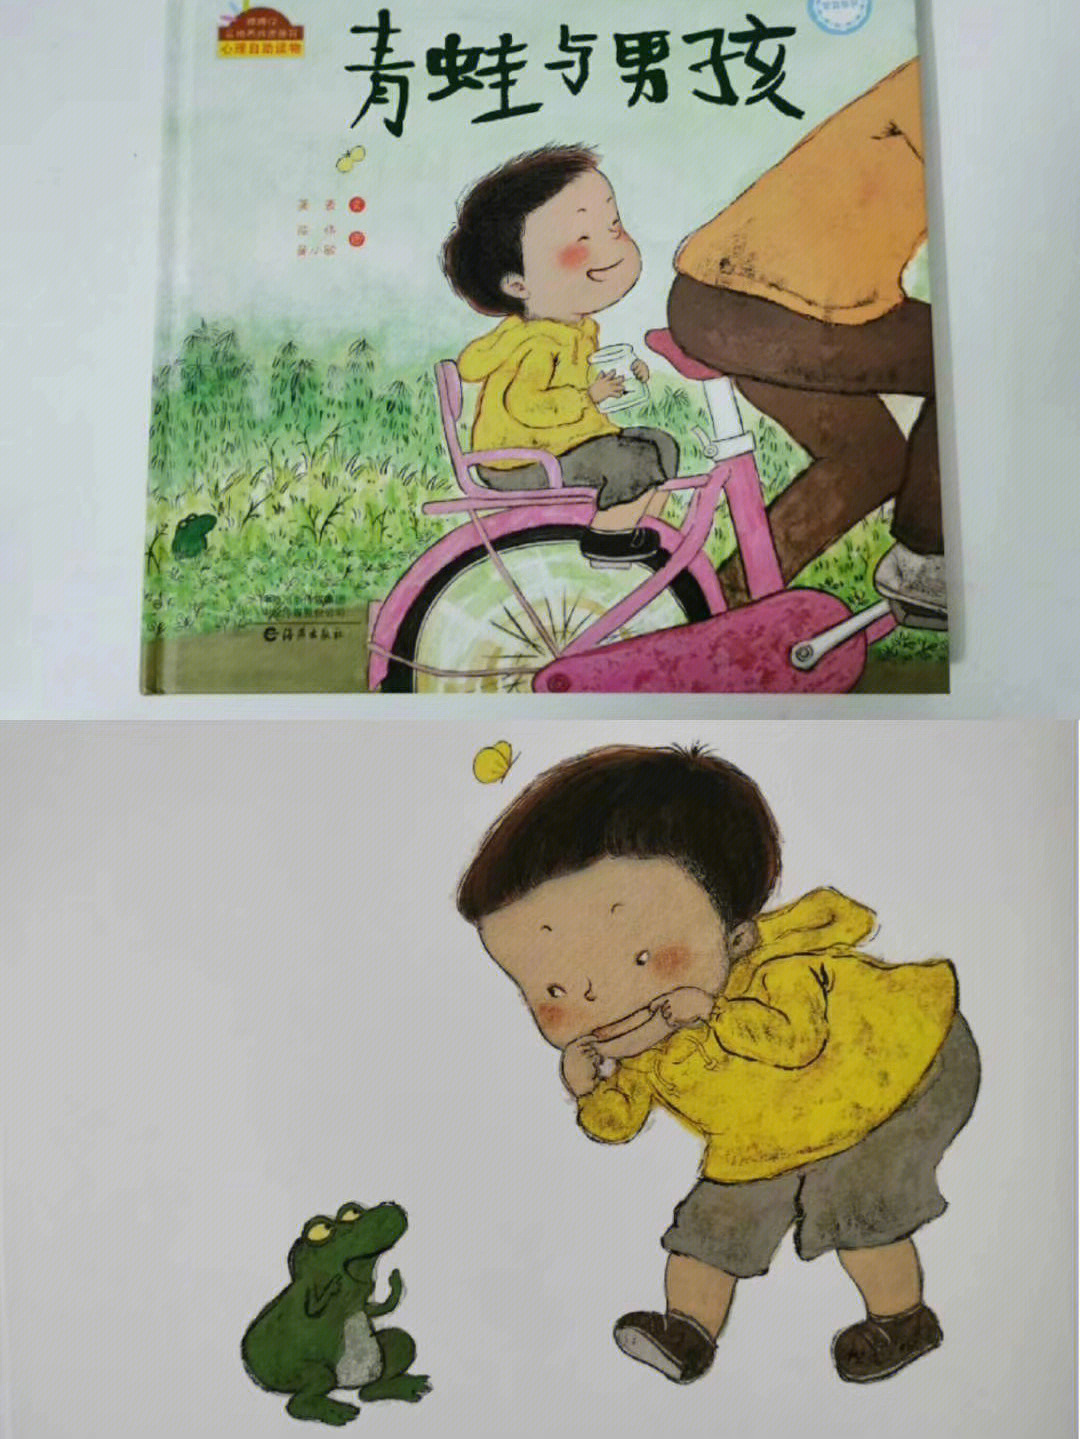 《青蛙与男孩》,也是像《团圆》那样很美很暖的画风,也是获了丰子恺